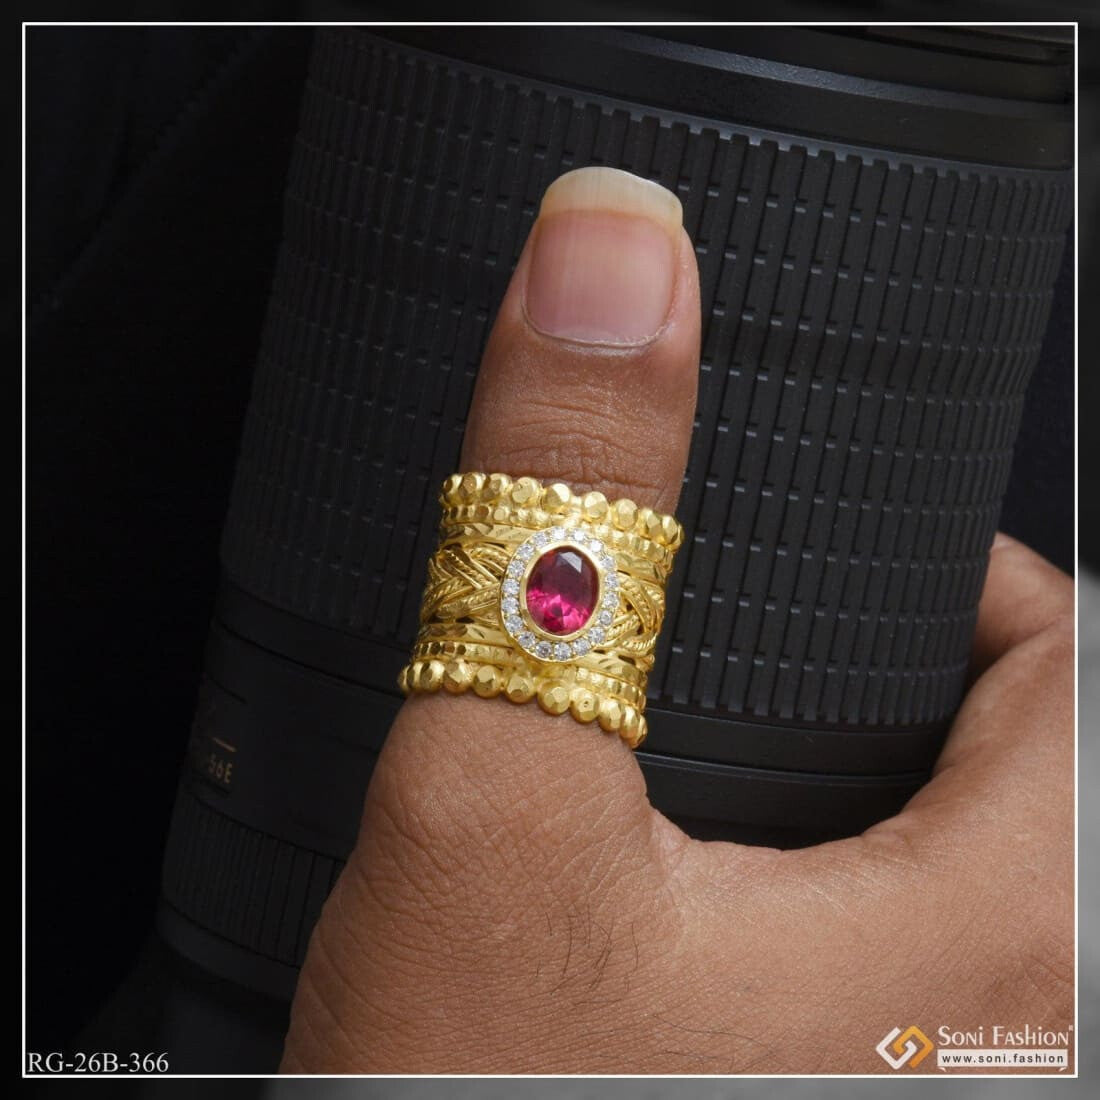 Hawaiian Floral Thumb Ring Gold Ring Wedding Ring Thumb Rings Minimalist  Ring Stacking Ring Simple Ring Woman's Ring TR55 - Etsy